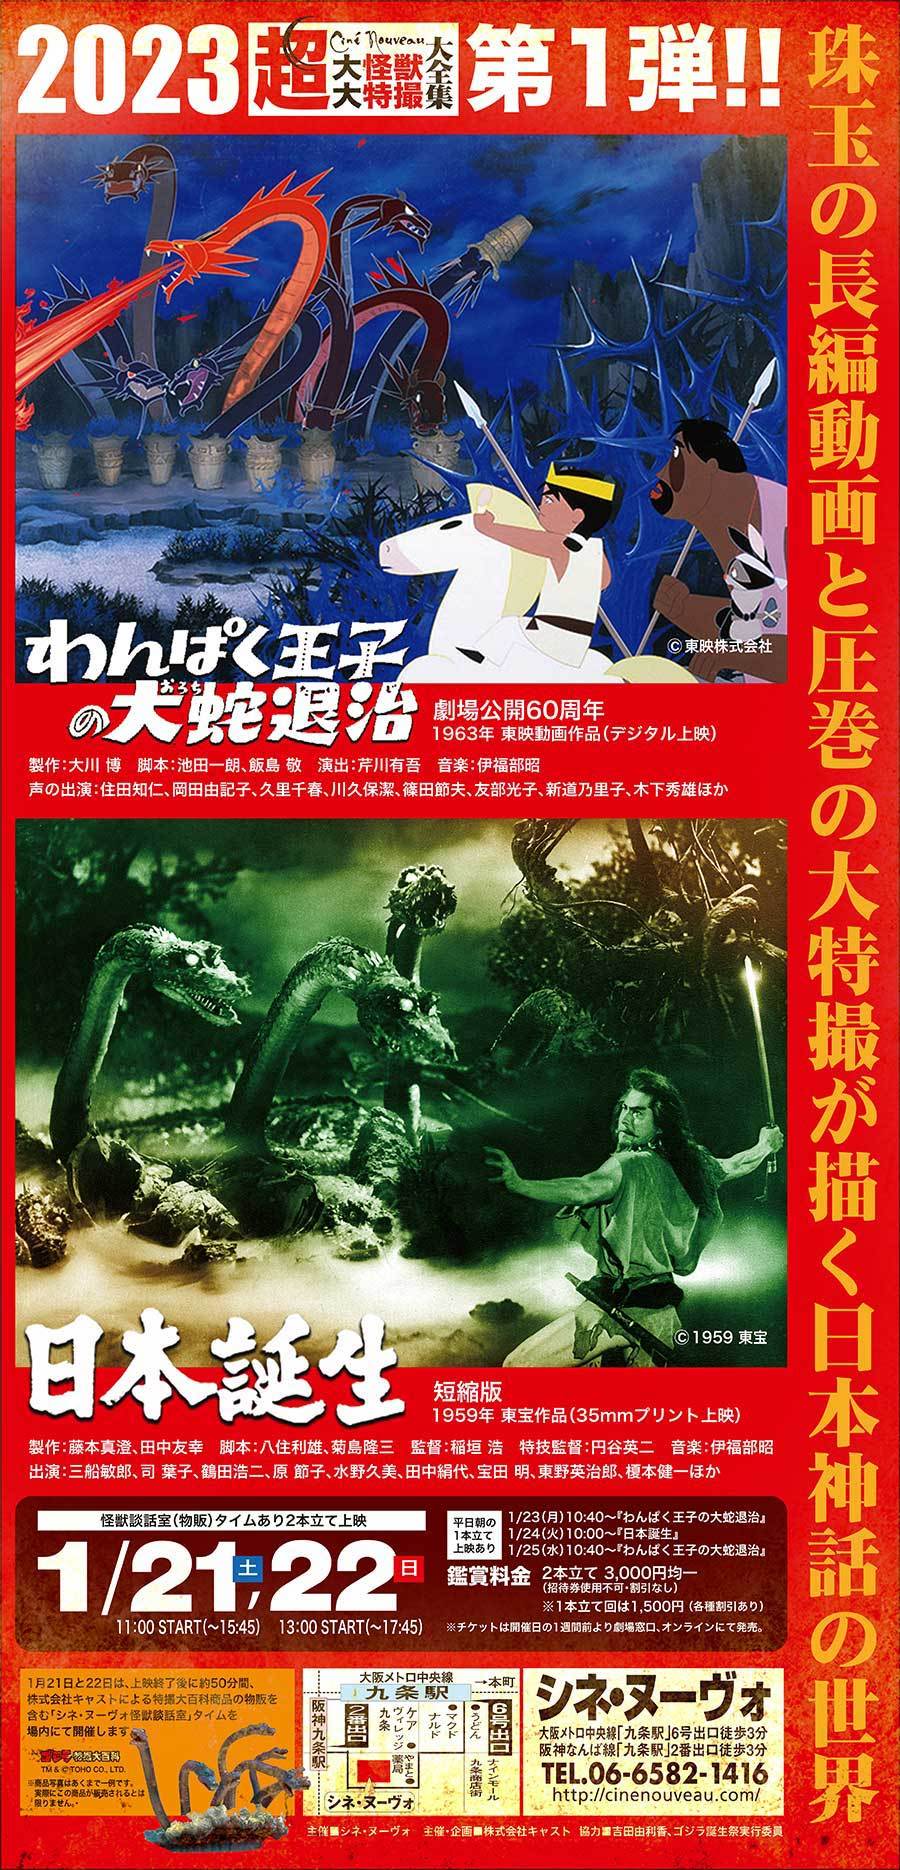 新春1月の超大怪獣はアニメと大特撮で贈る日本神話2本立て!!_a0180302_10570851.jpg